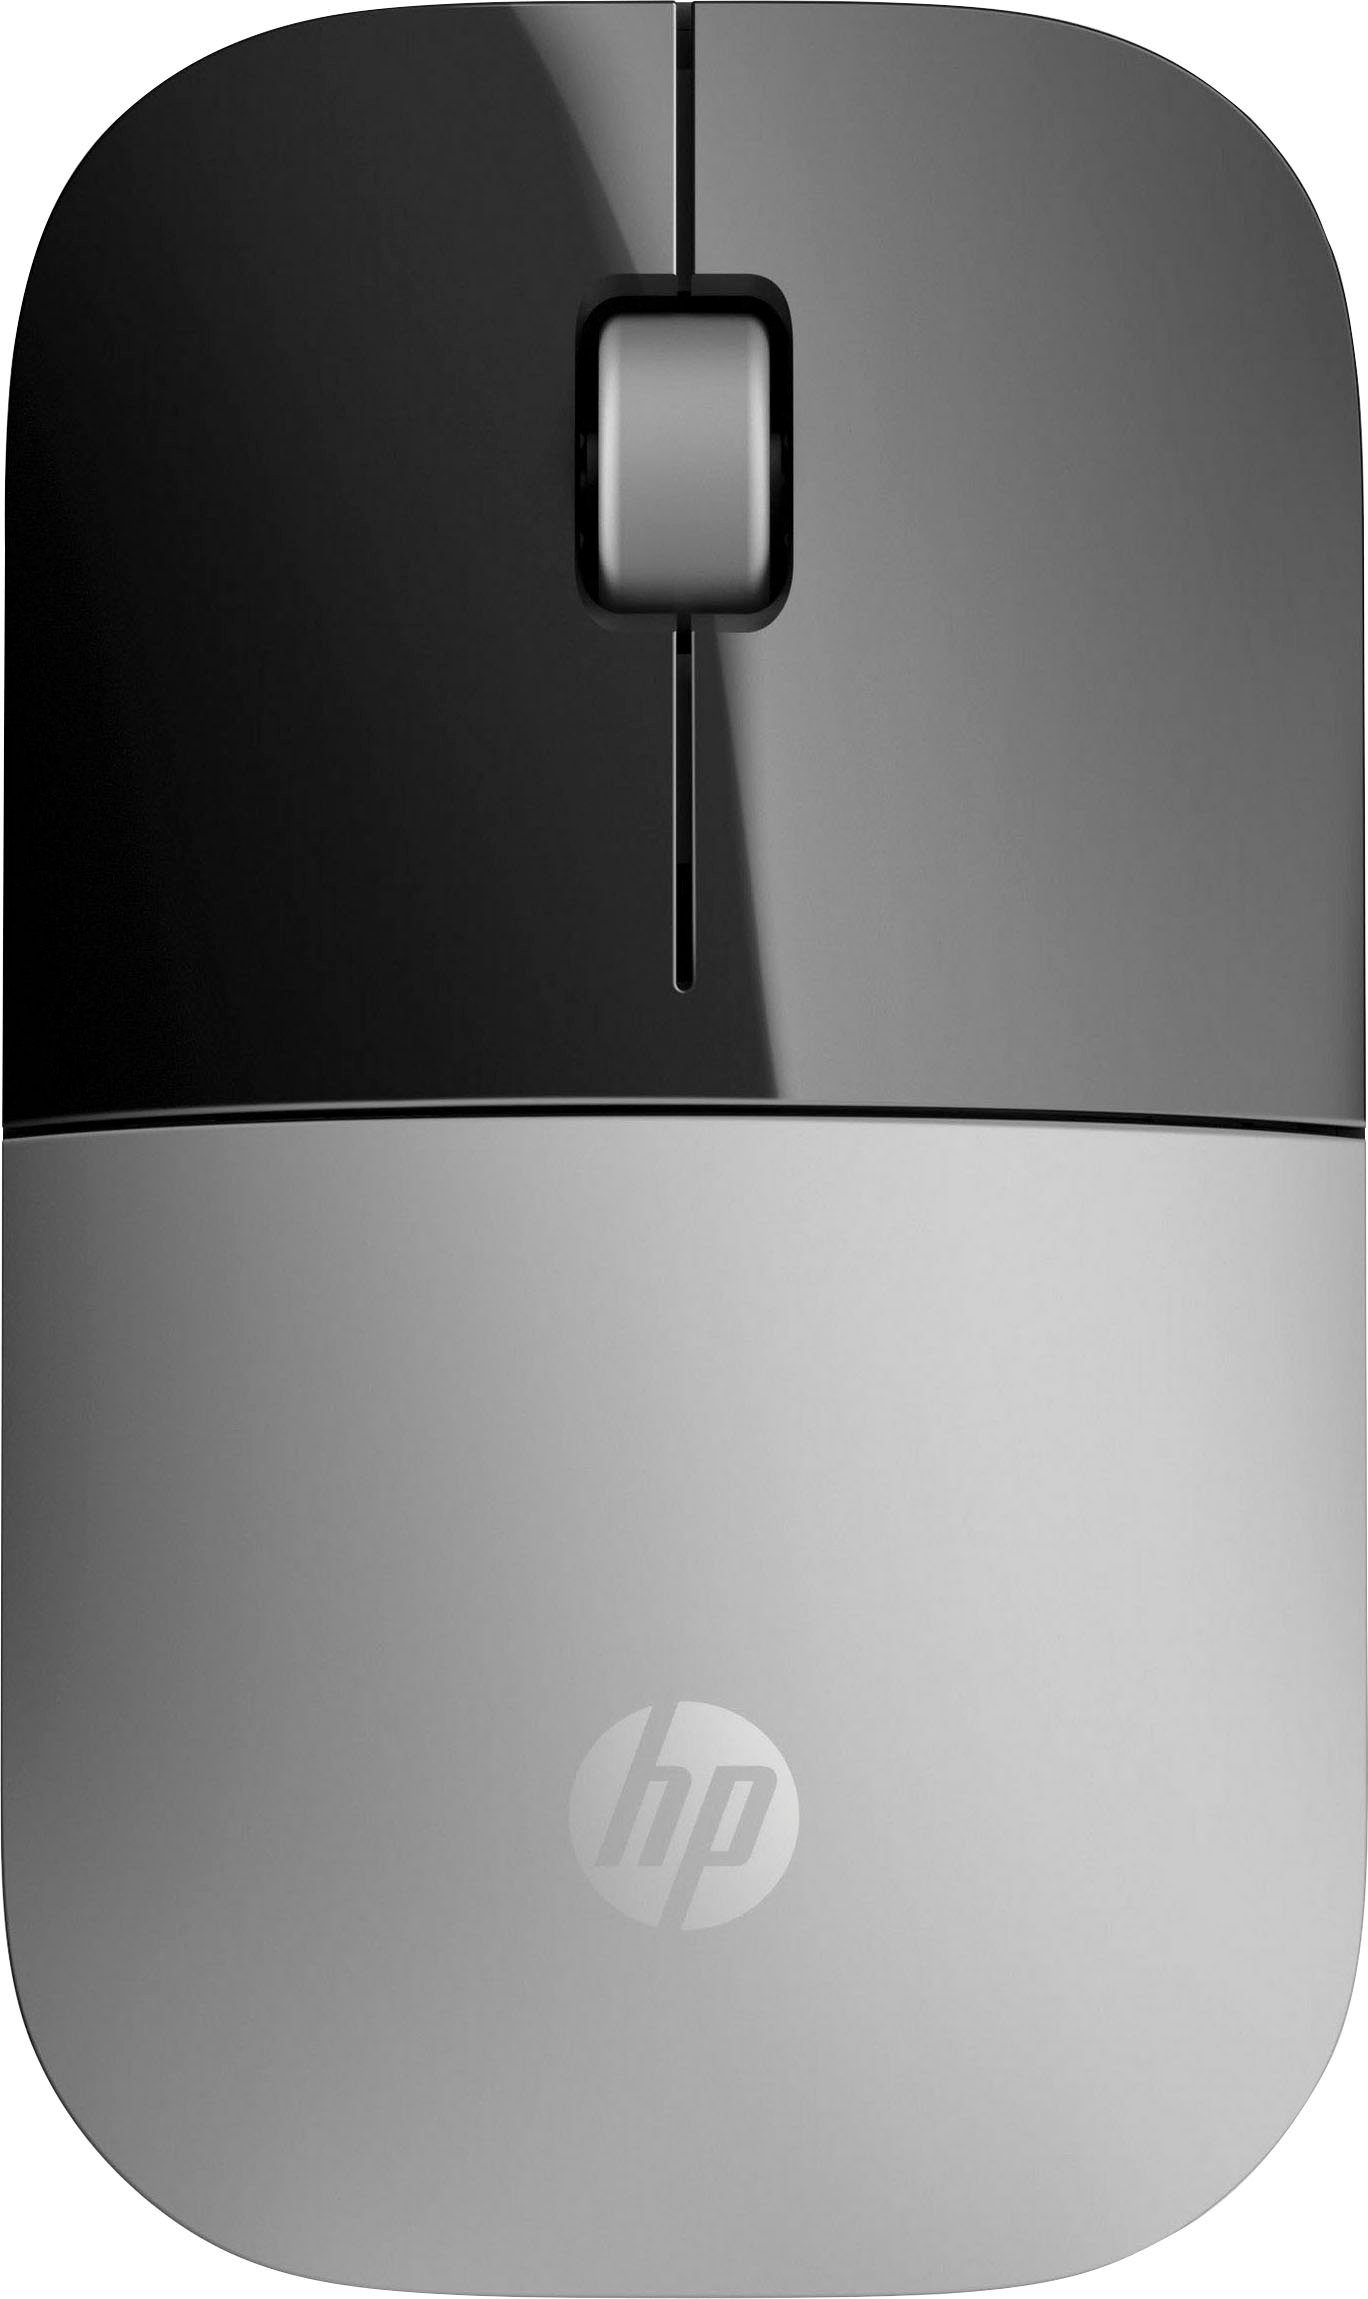 Z3700 schwarz/silberfarben HP Maus